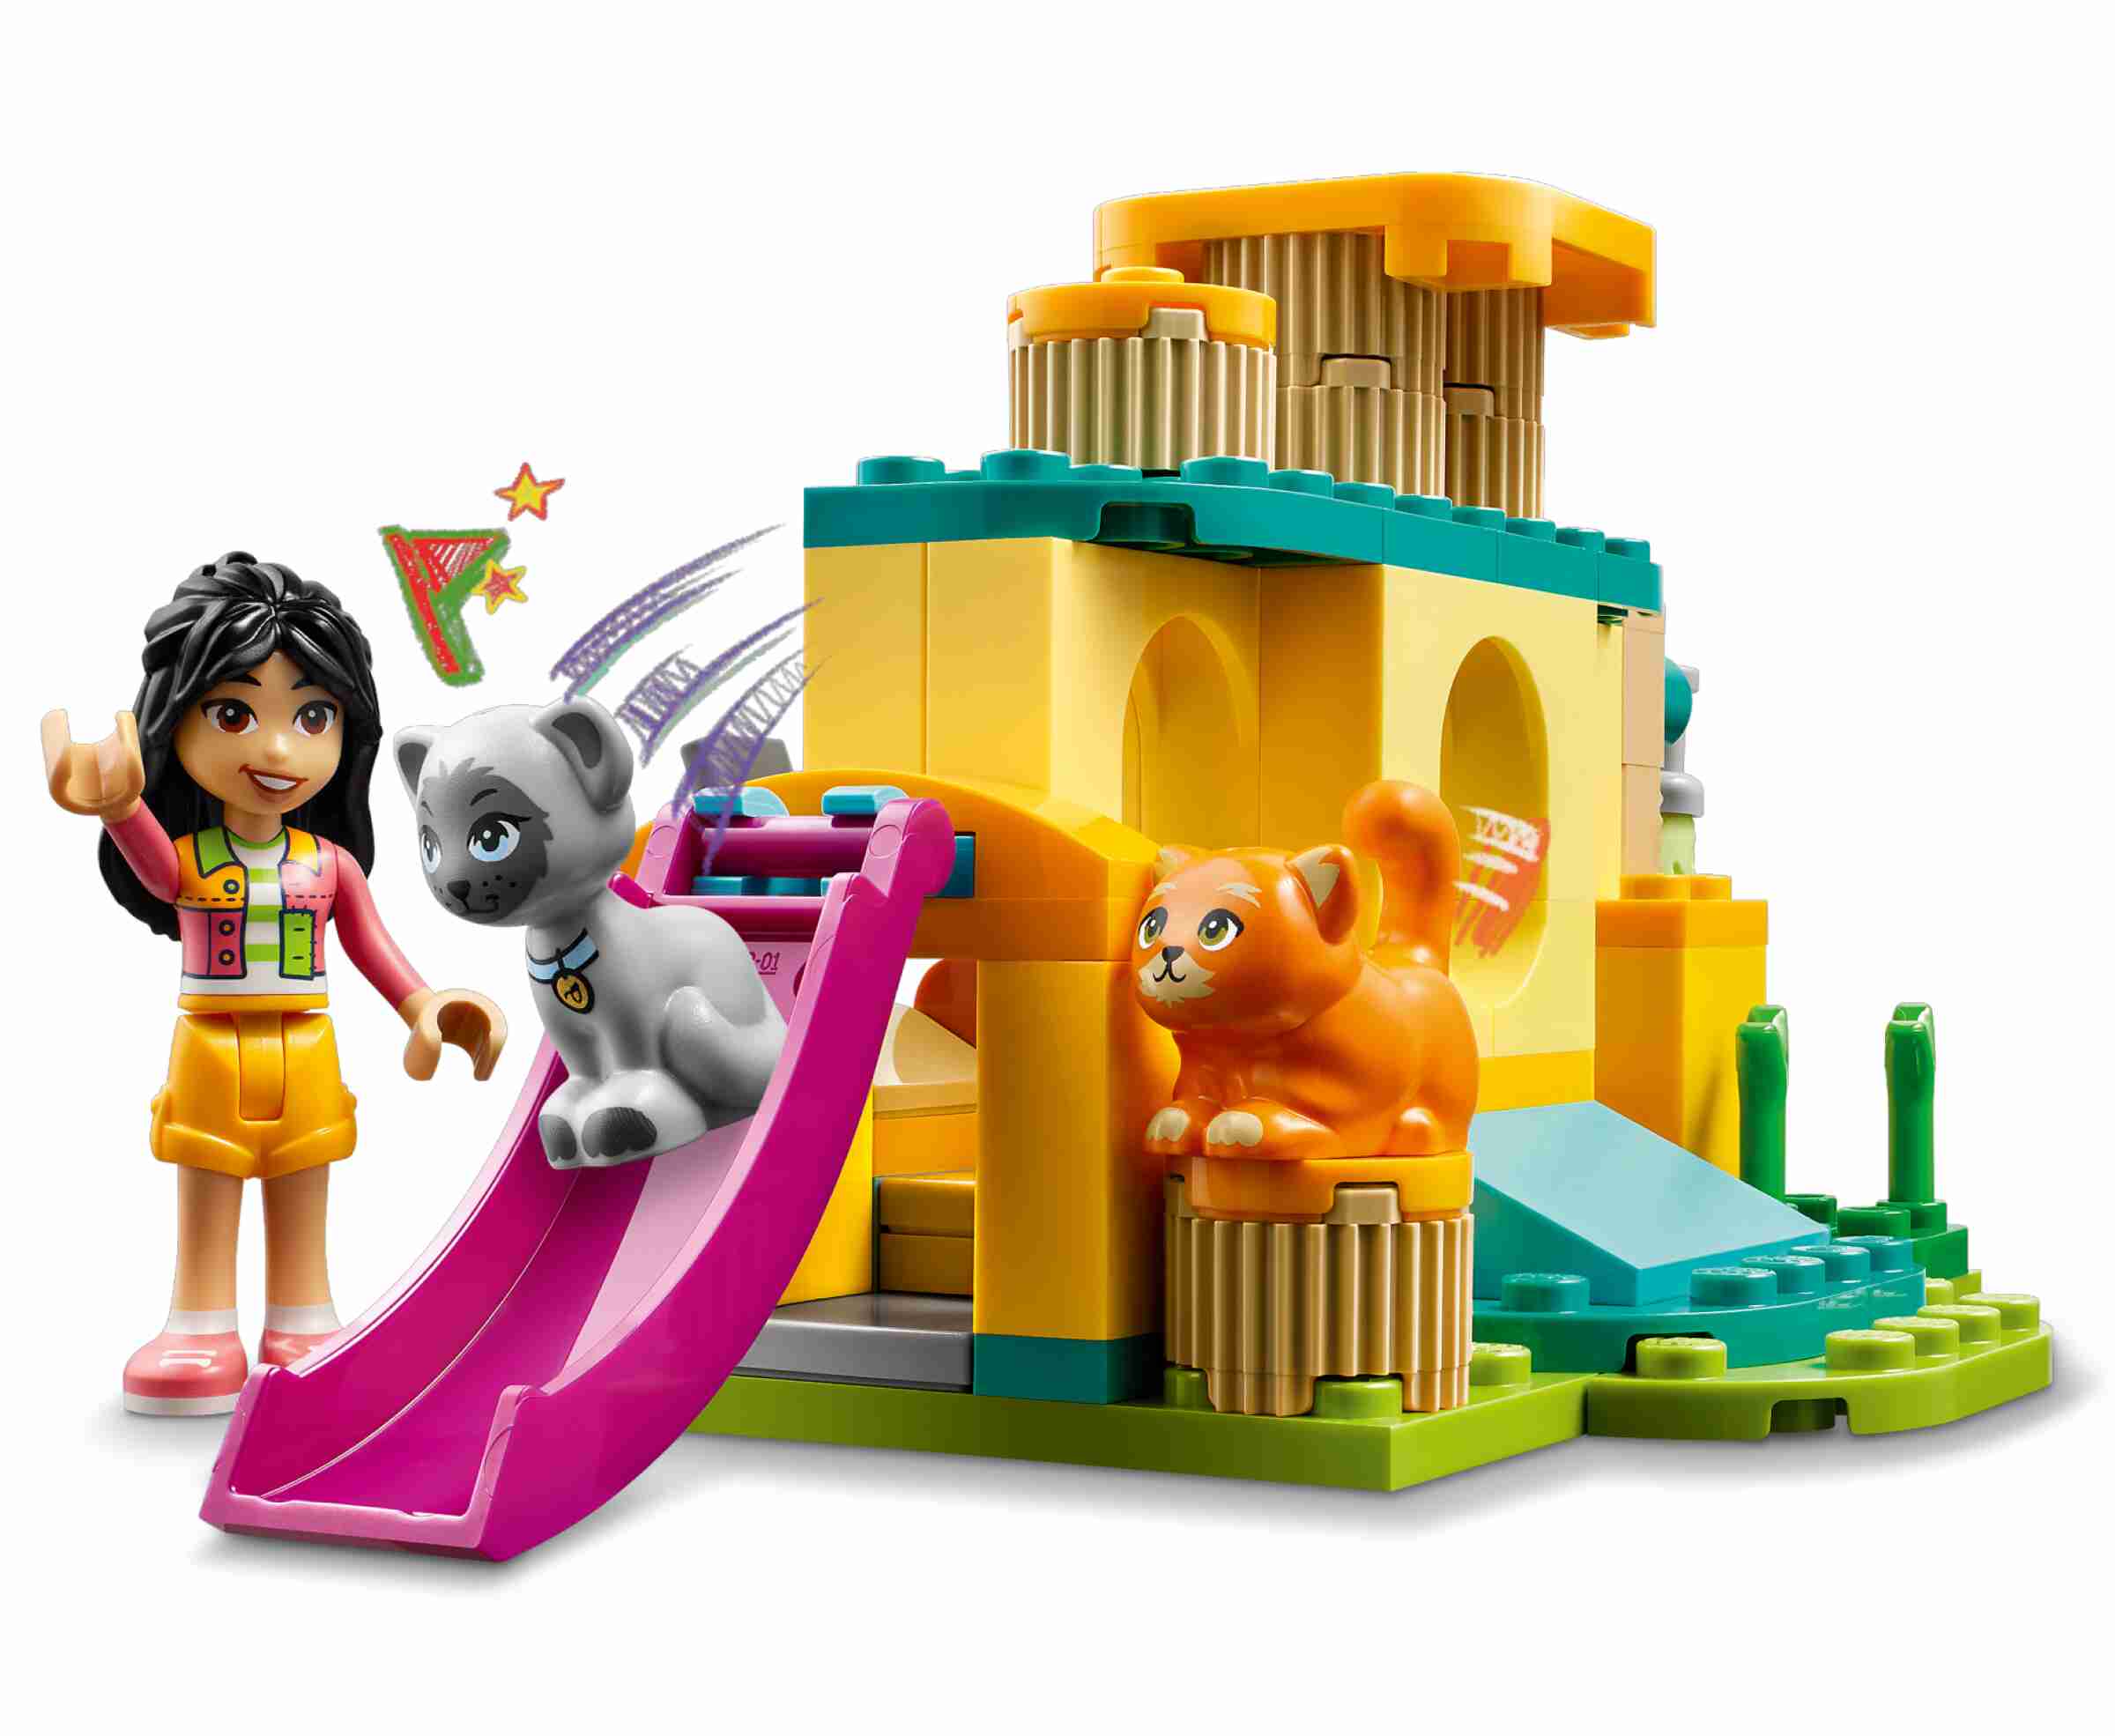 LEGO 42612 Friends Abenteuer auf dem Katzenspielplatz, 2 Spielfiguren, 2 Katzen